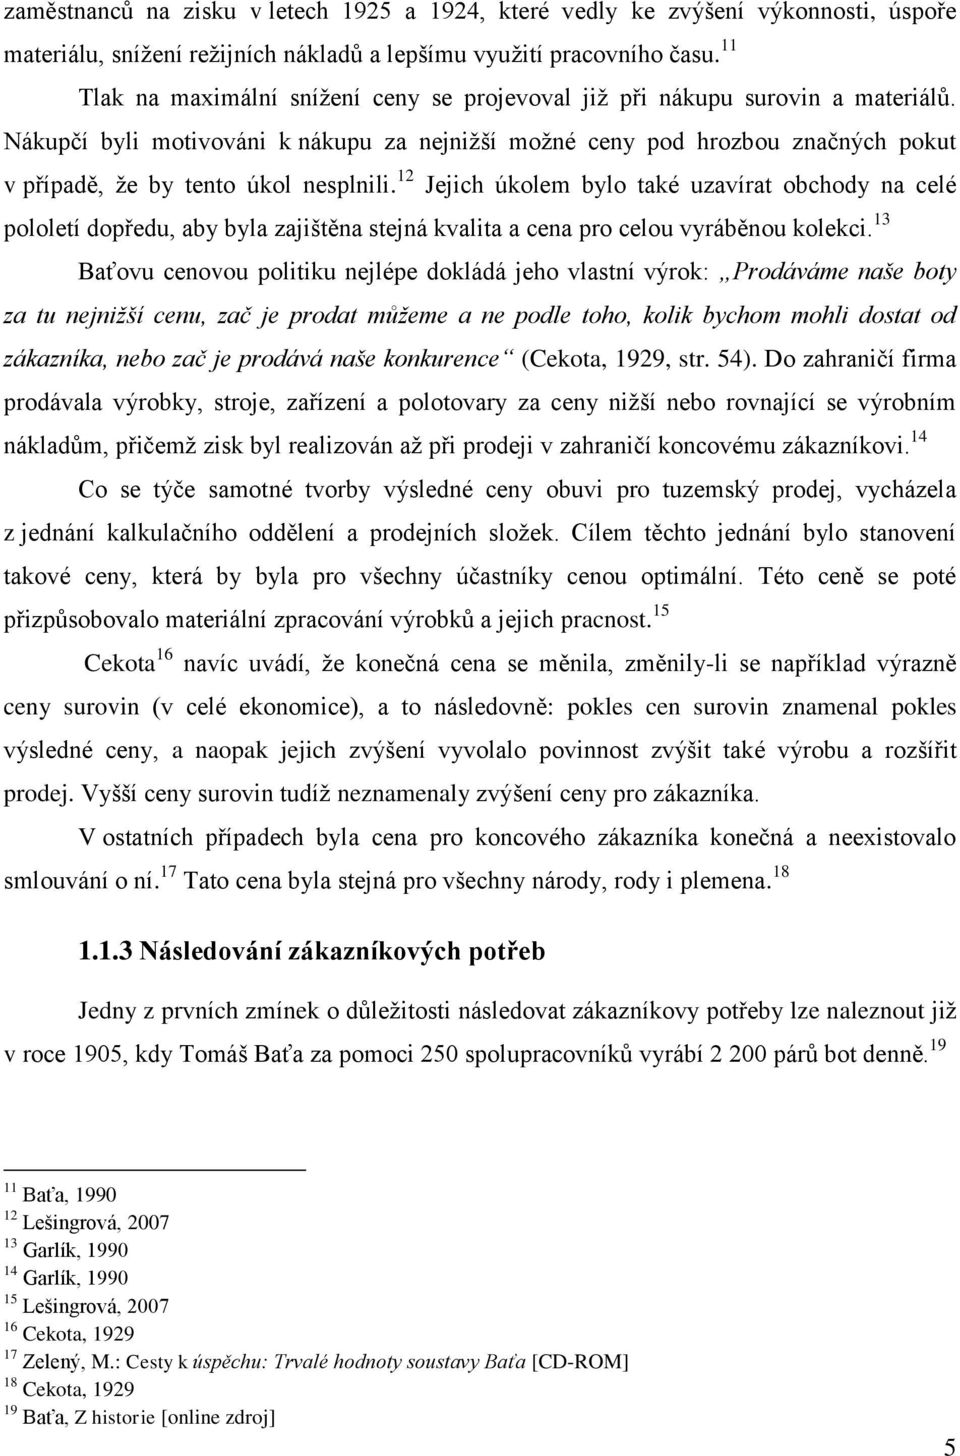 Vysoká škola ekonomická v Praze. Bakalářská práce Kateřina Navrátilová -  PDF Free Download